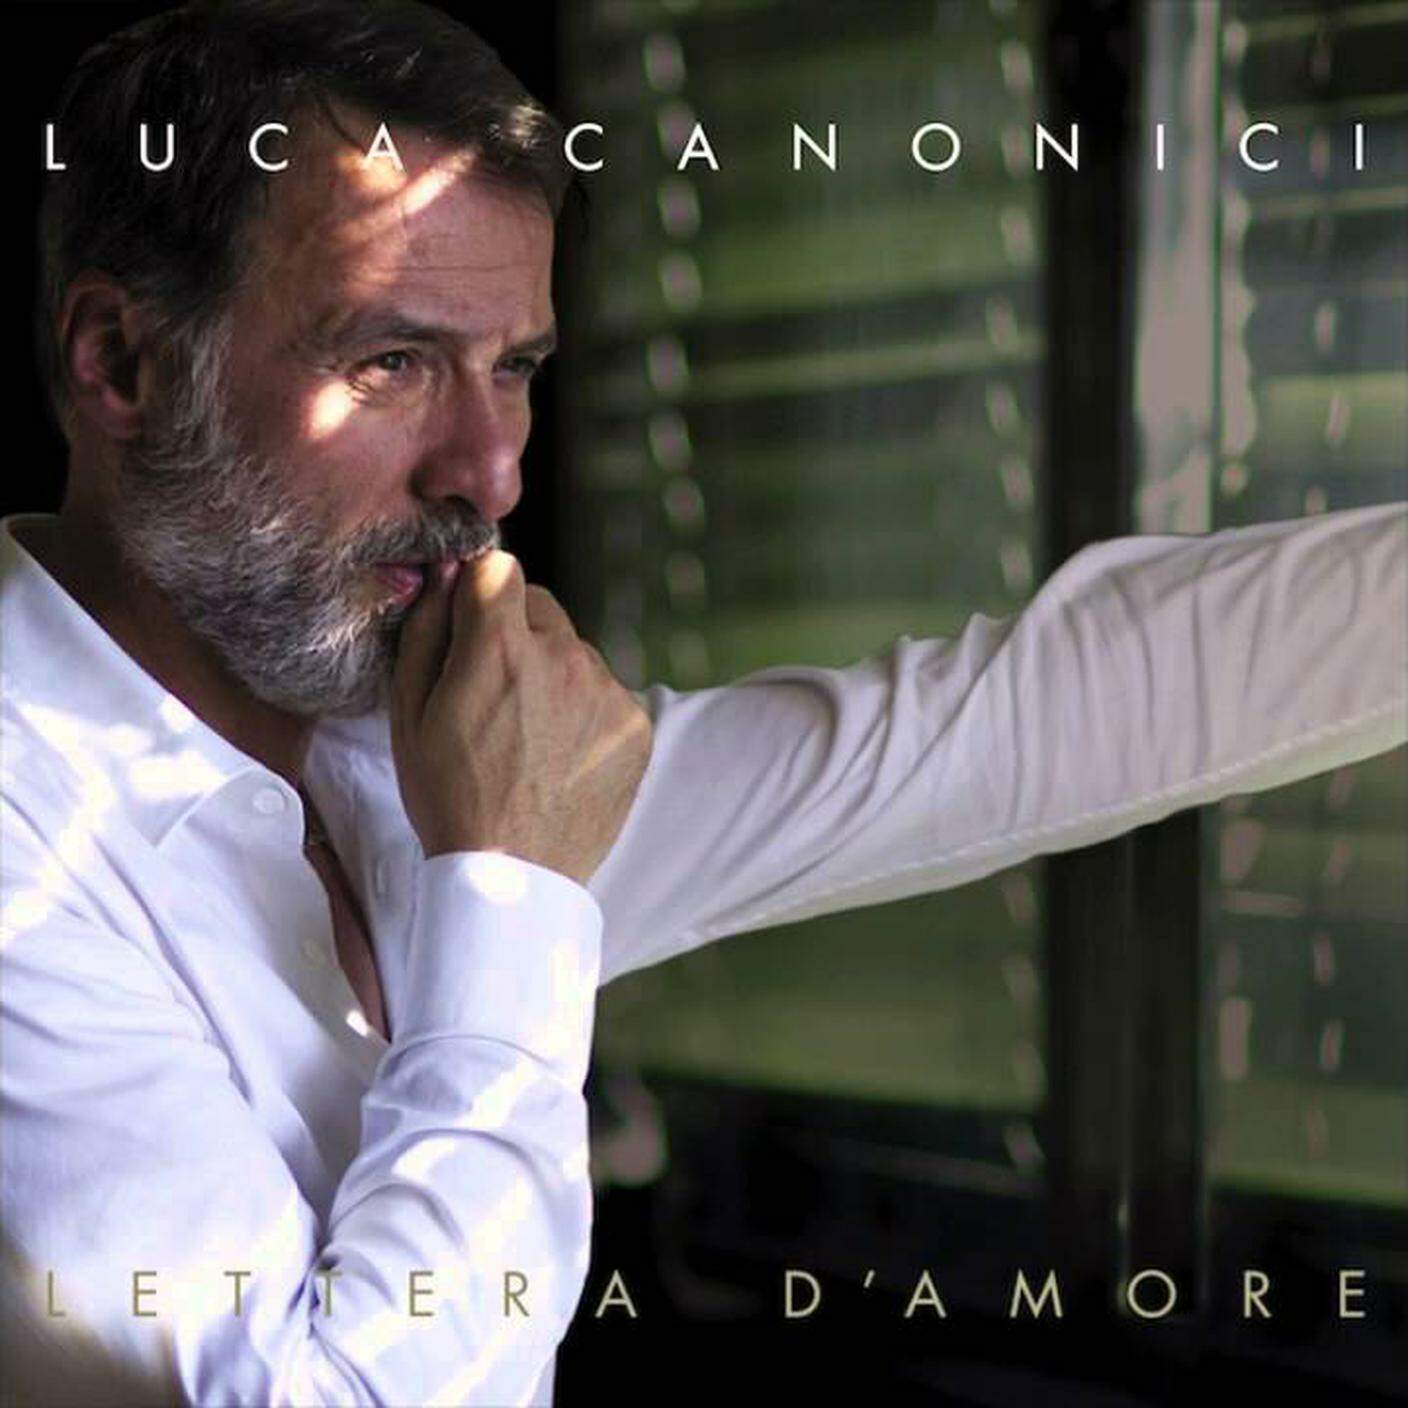 Luca Canonici, "Lettere d'amore" (detteglio copertina)